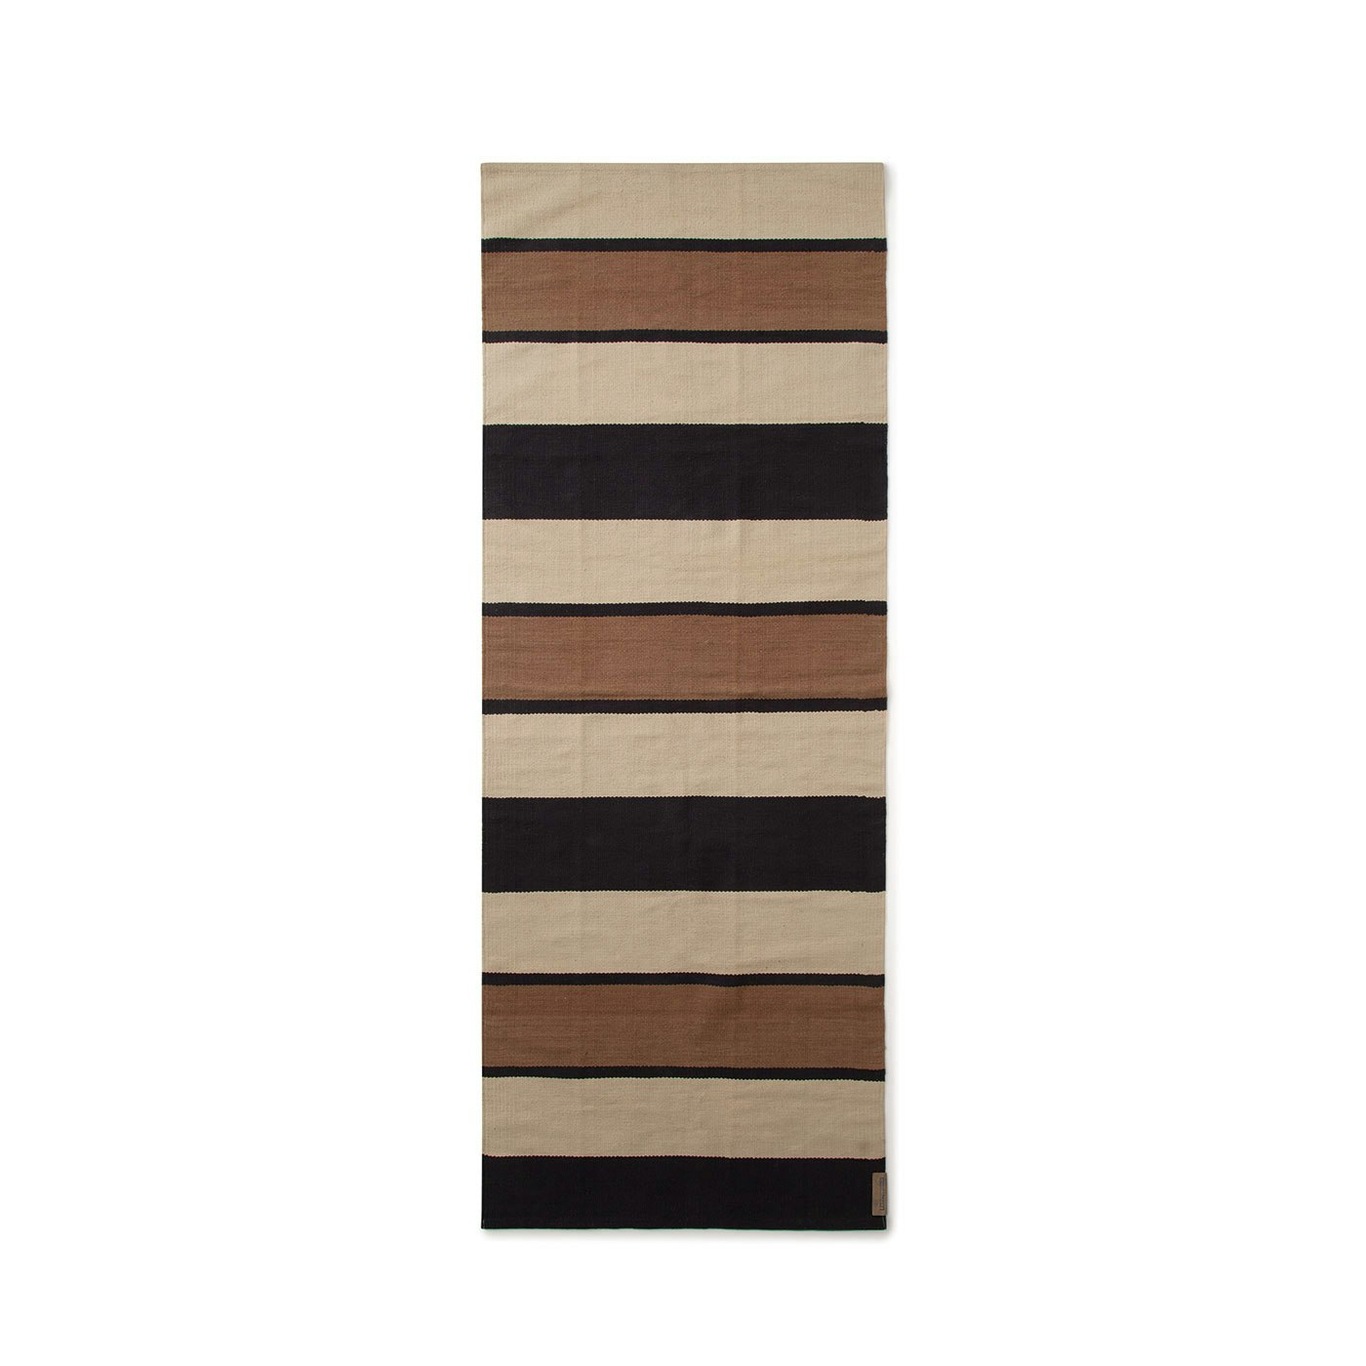 Striped Organic Cotton Rug Beige/Dark Grey, 170x240 cm